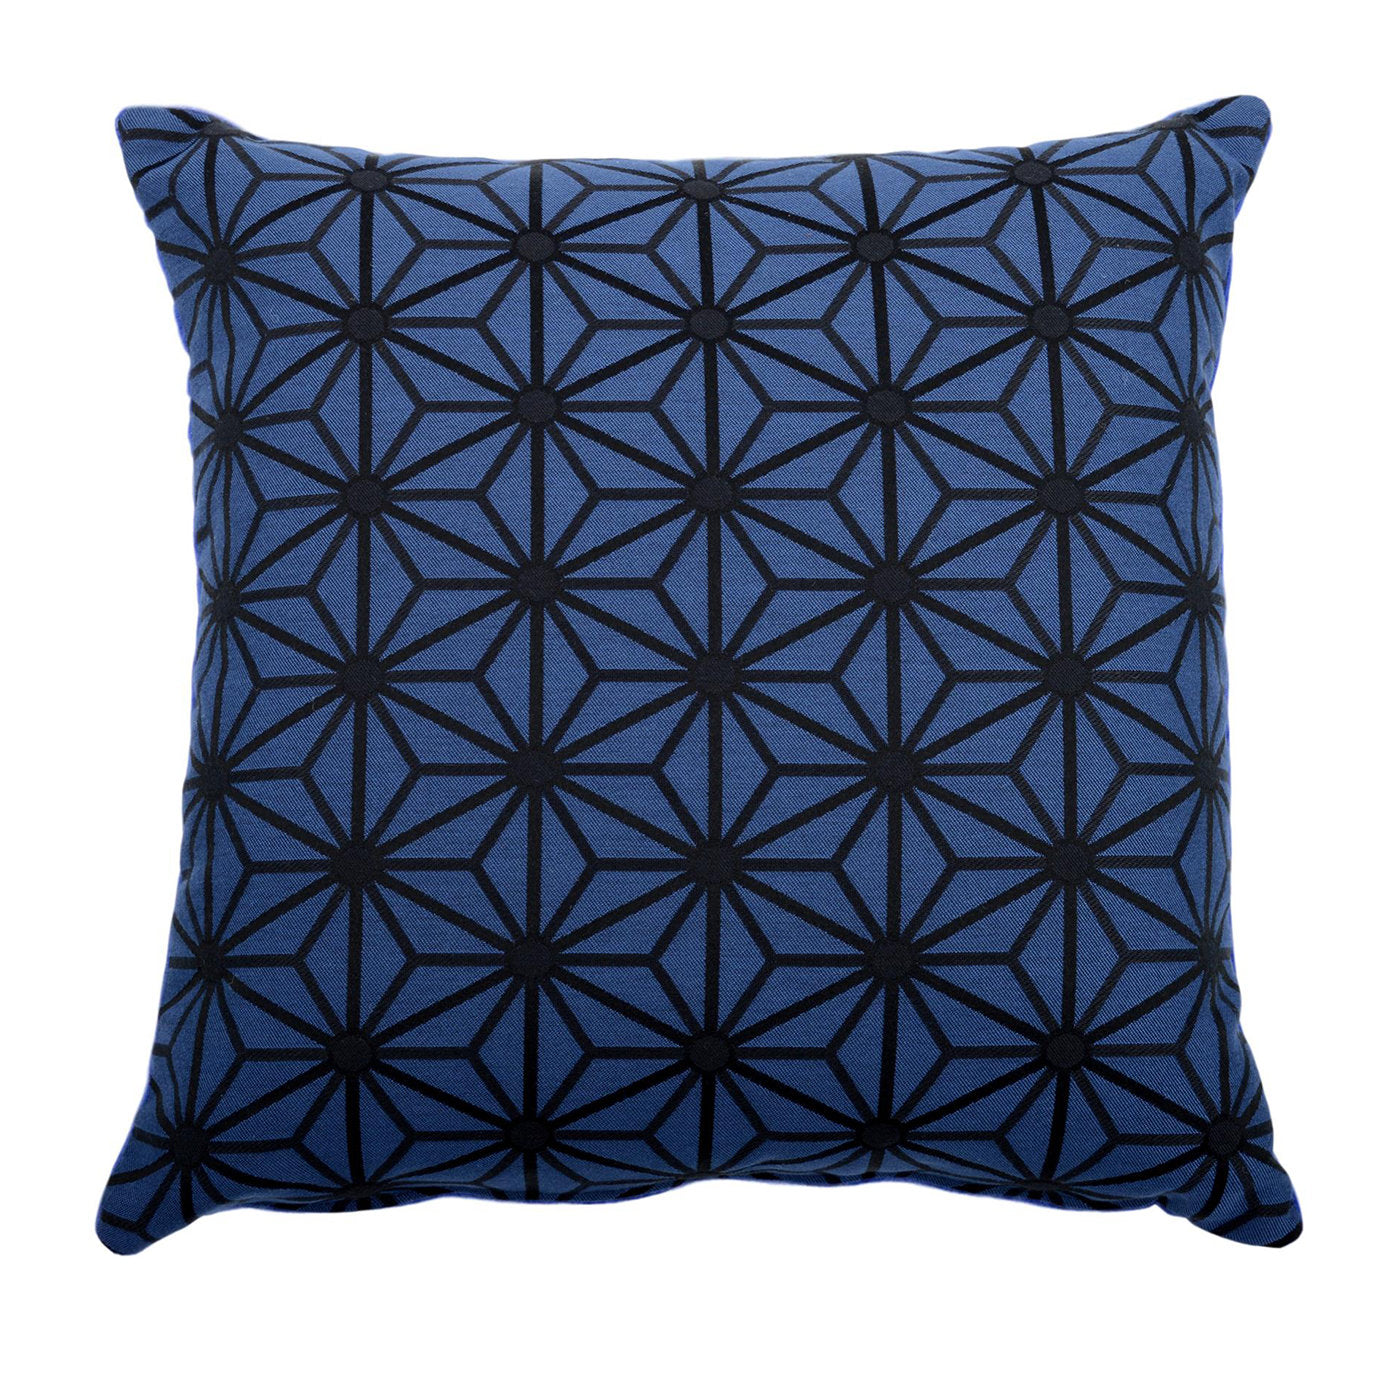 Blue Carrè Cushion in Steila jacquard fabric - Main view